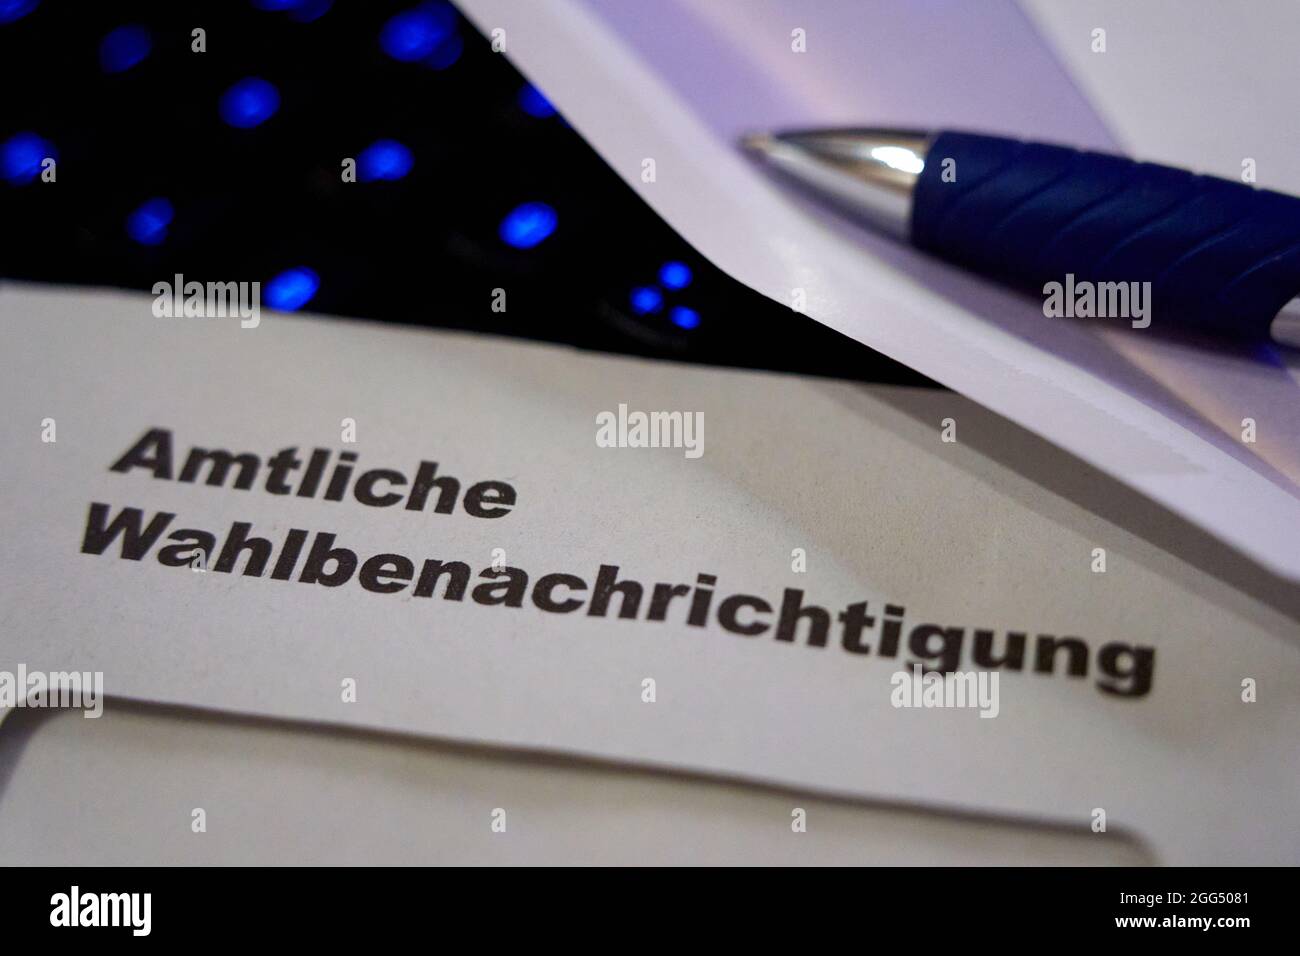 Lettres noires sur enveloppe blanche disant: Notification officielle des élections (allemand: Amtliche Wahlbenachrichtigung). Le clavier noir s'allume en bleu dans le fond de l'écran Banque D'Images